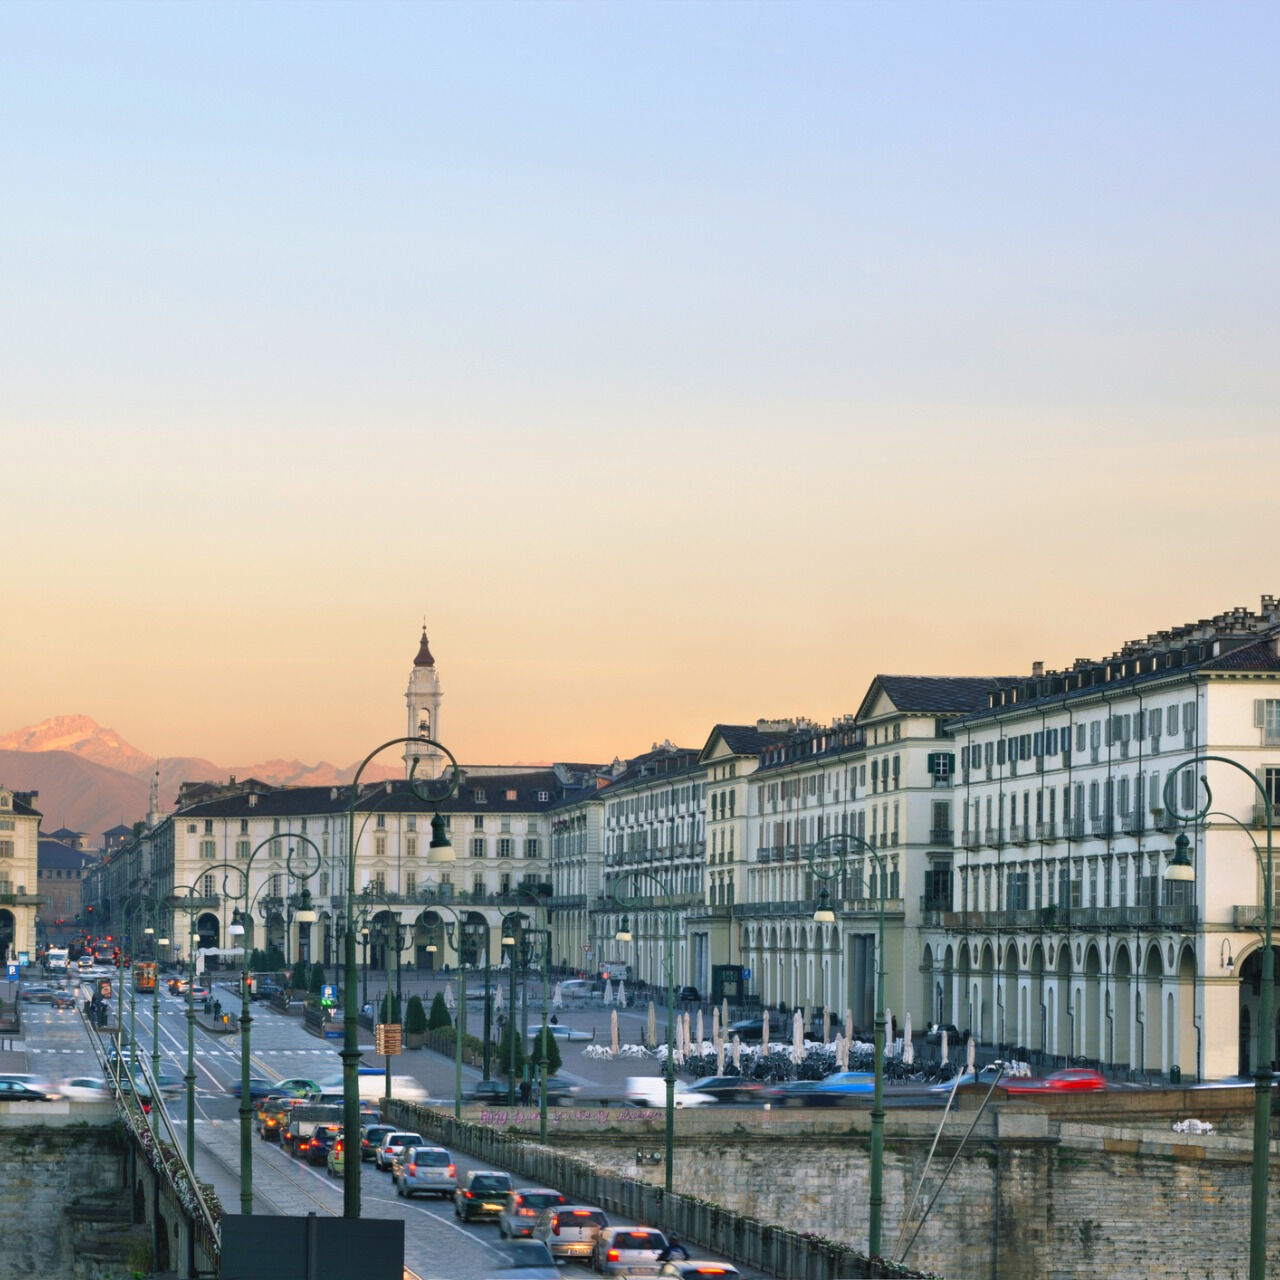 Parcheggi: economia circolare, verde urbano, strade e trasporti efficienti: ecco come Torino si sta muovendo per diventare più green